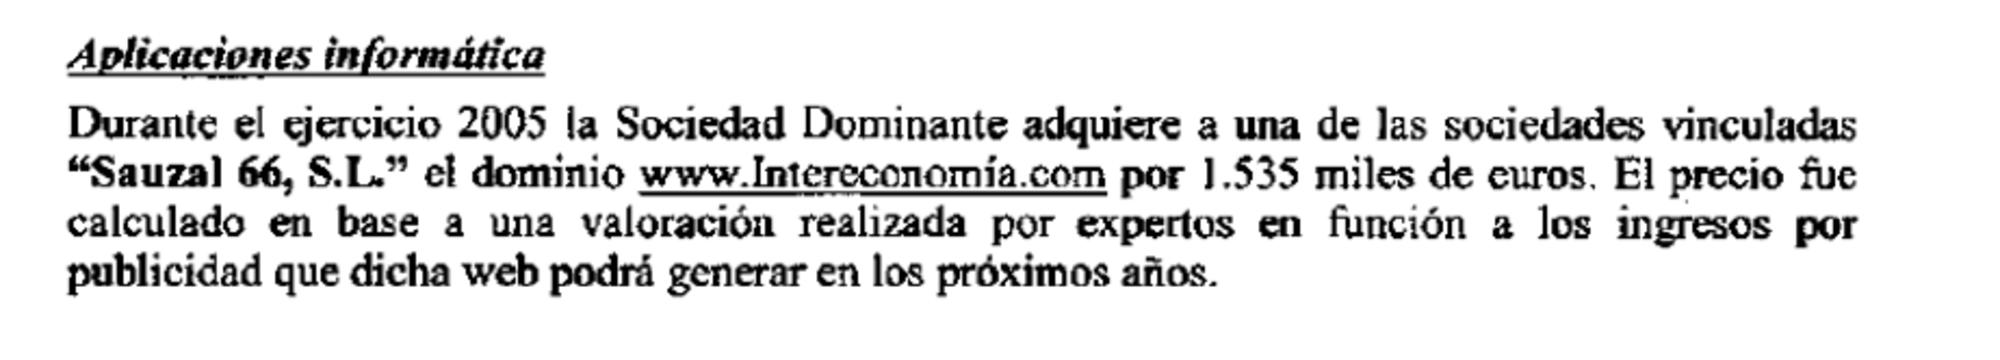 Cuentas Intereconomía 2005 compra dominio